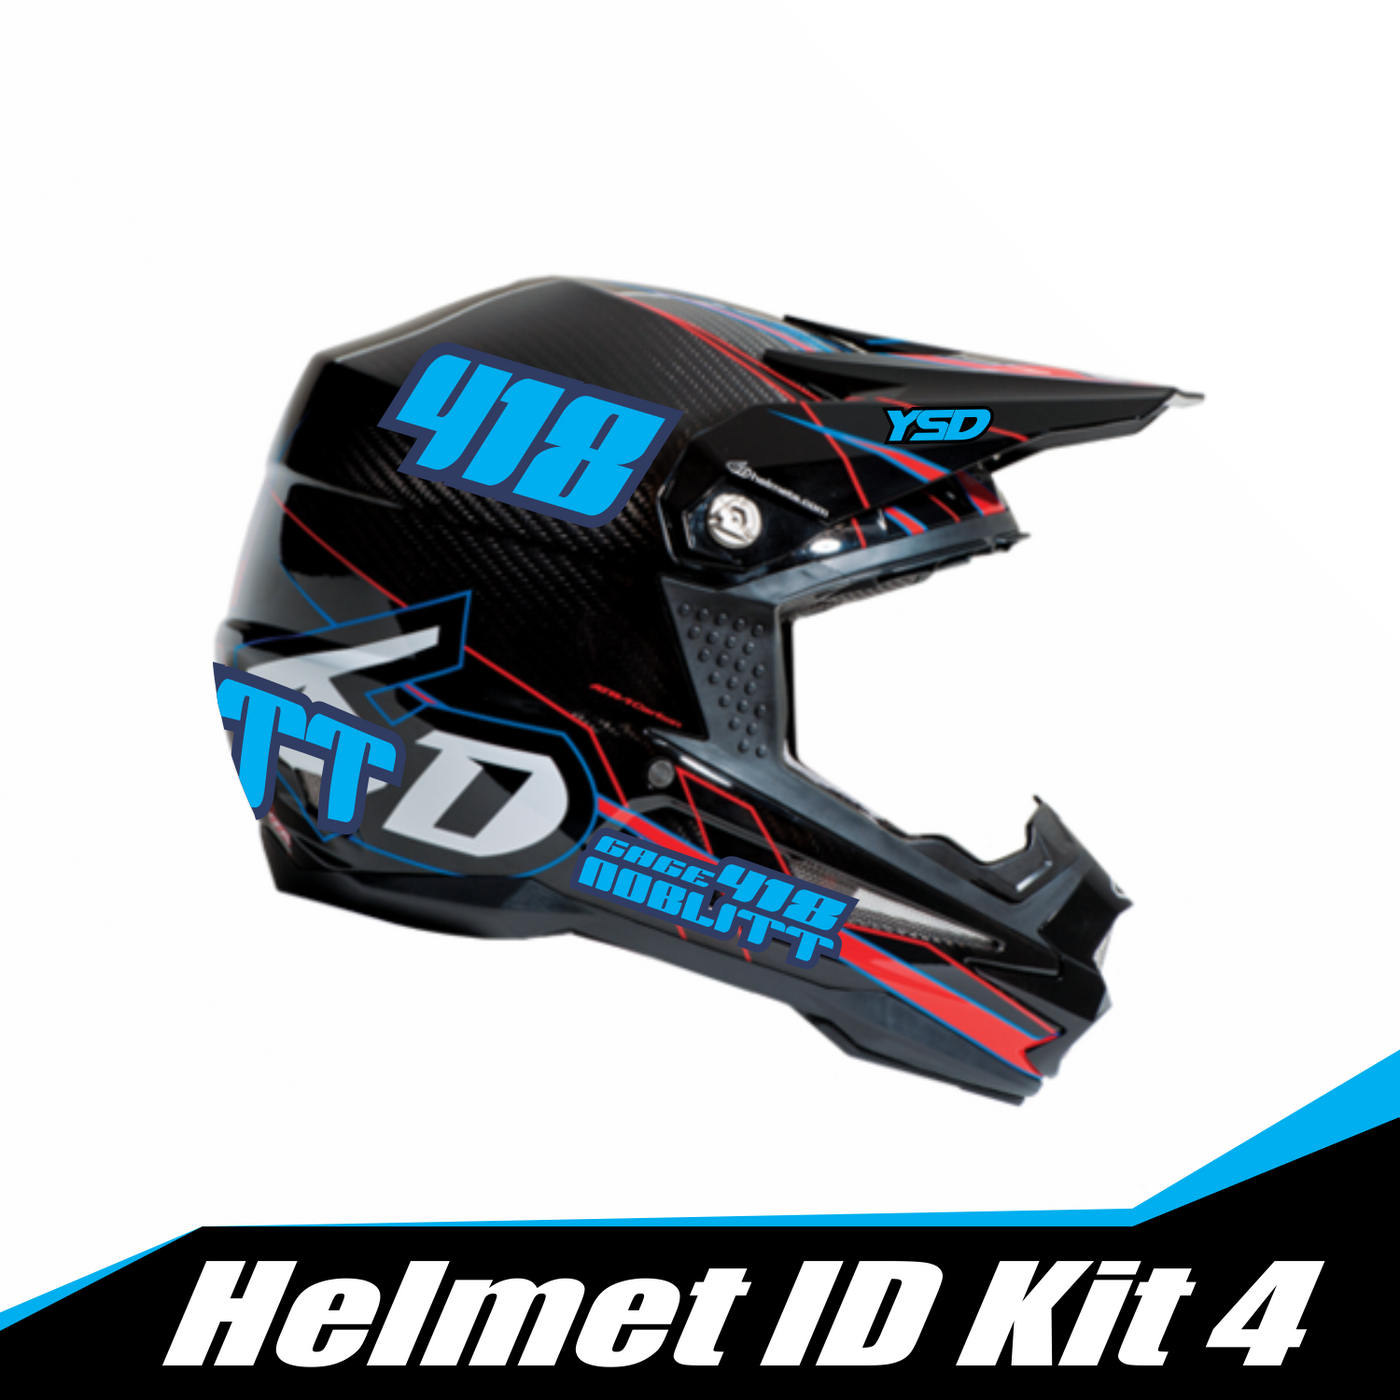 Helmet ID kit 4 - Y&S Designs, LLC